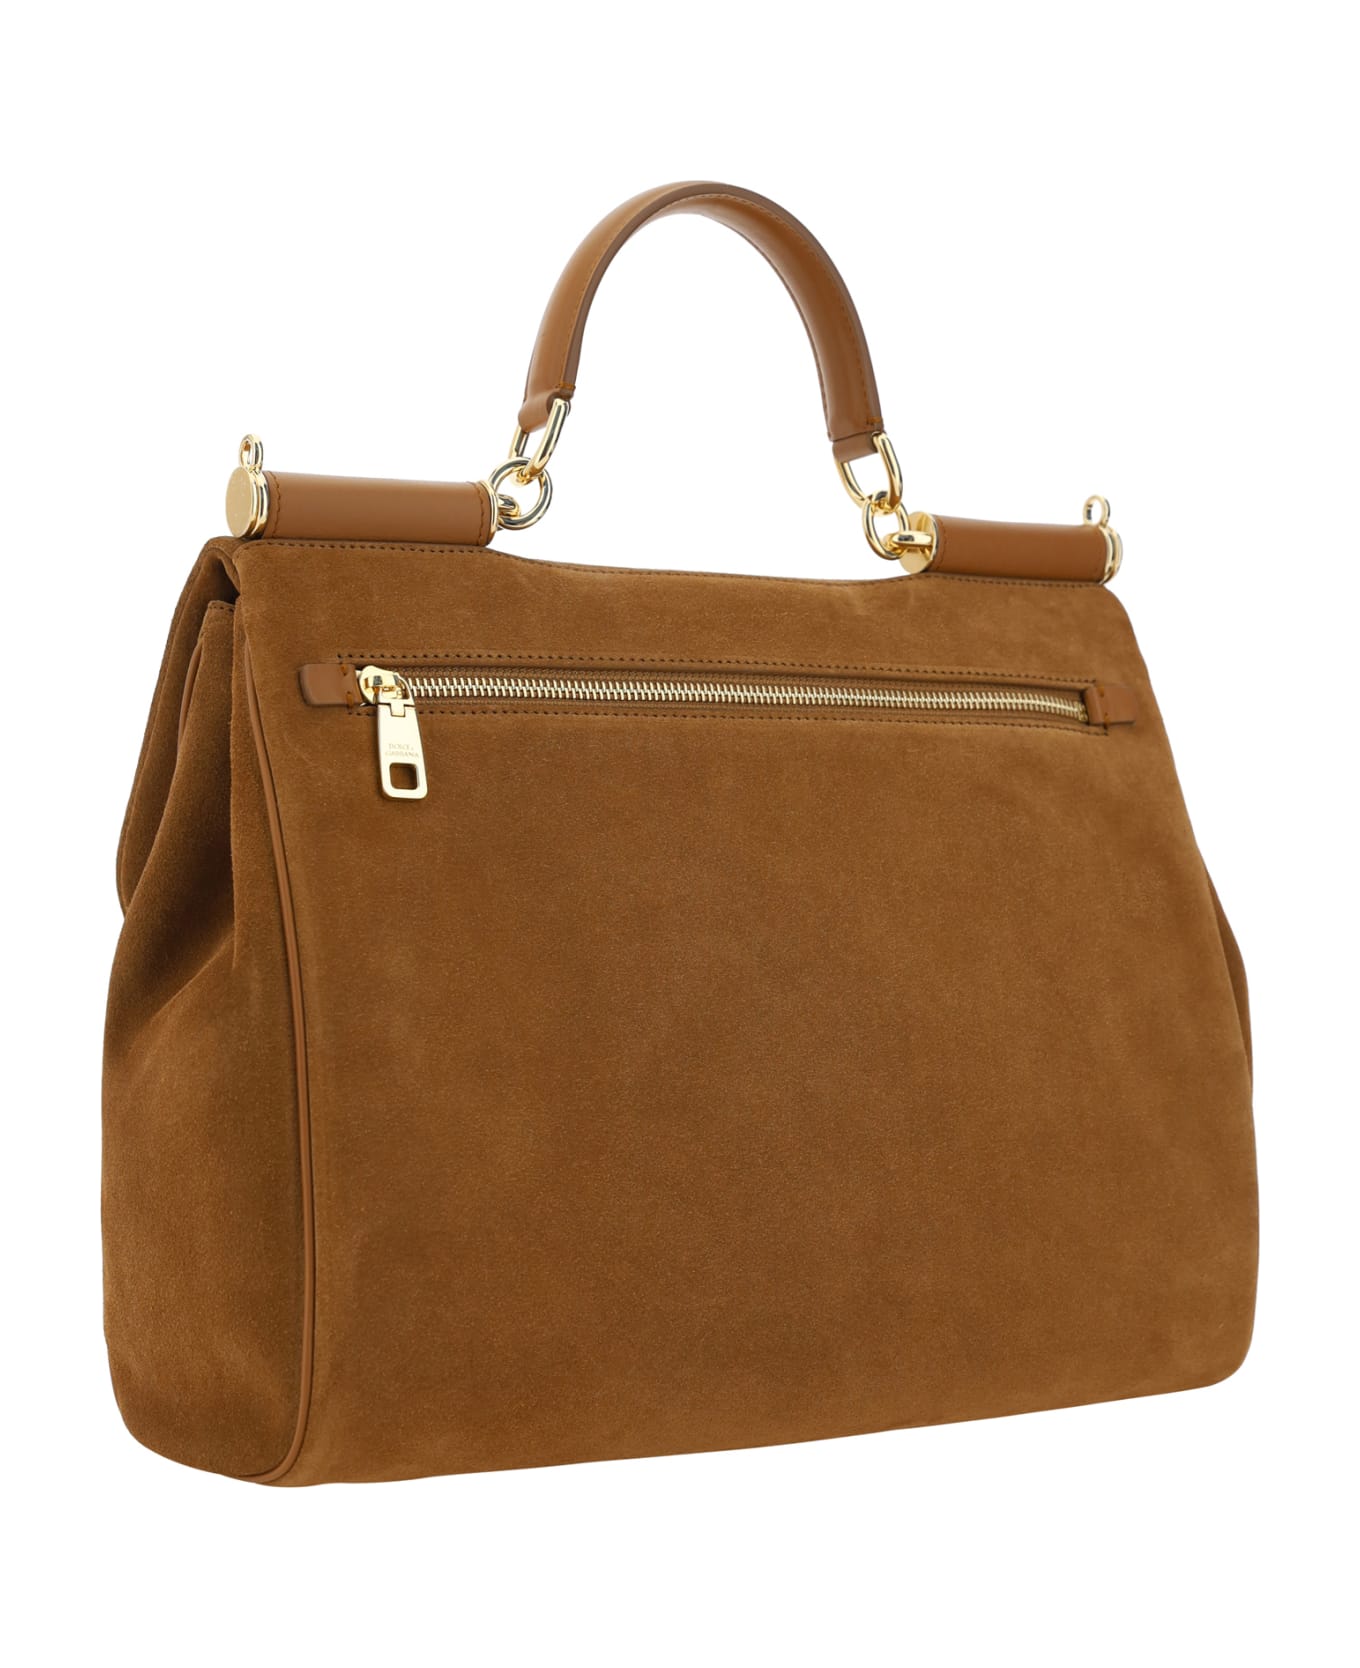 Dolce & Gabbana Sicily Handbag - Camel トートバッグ